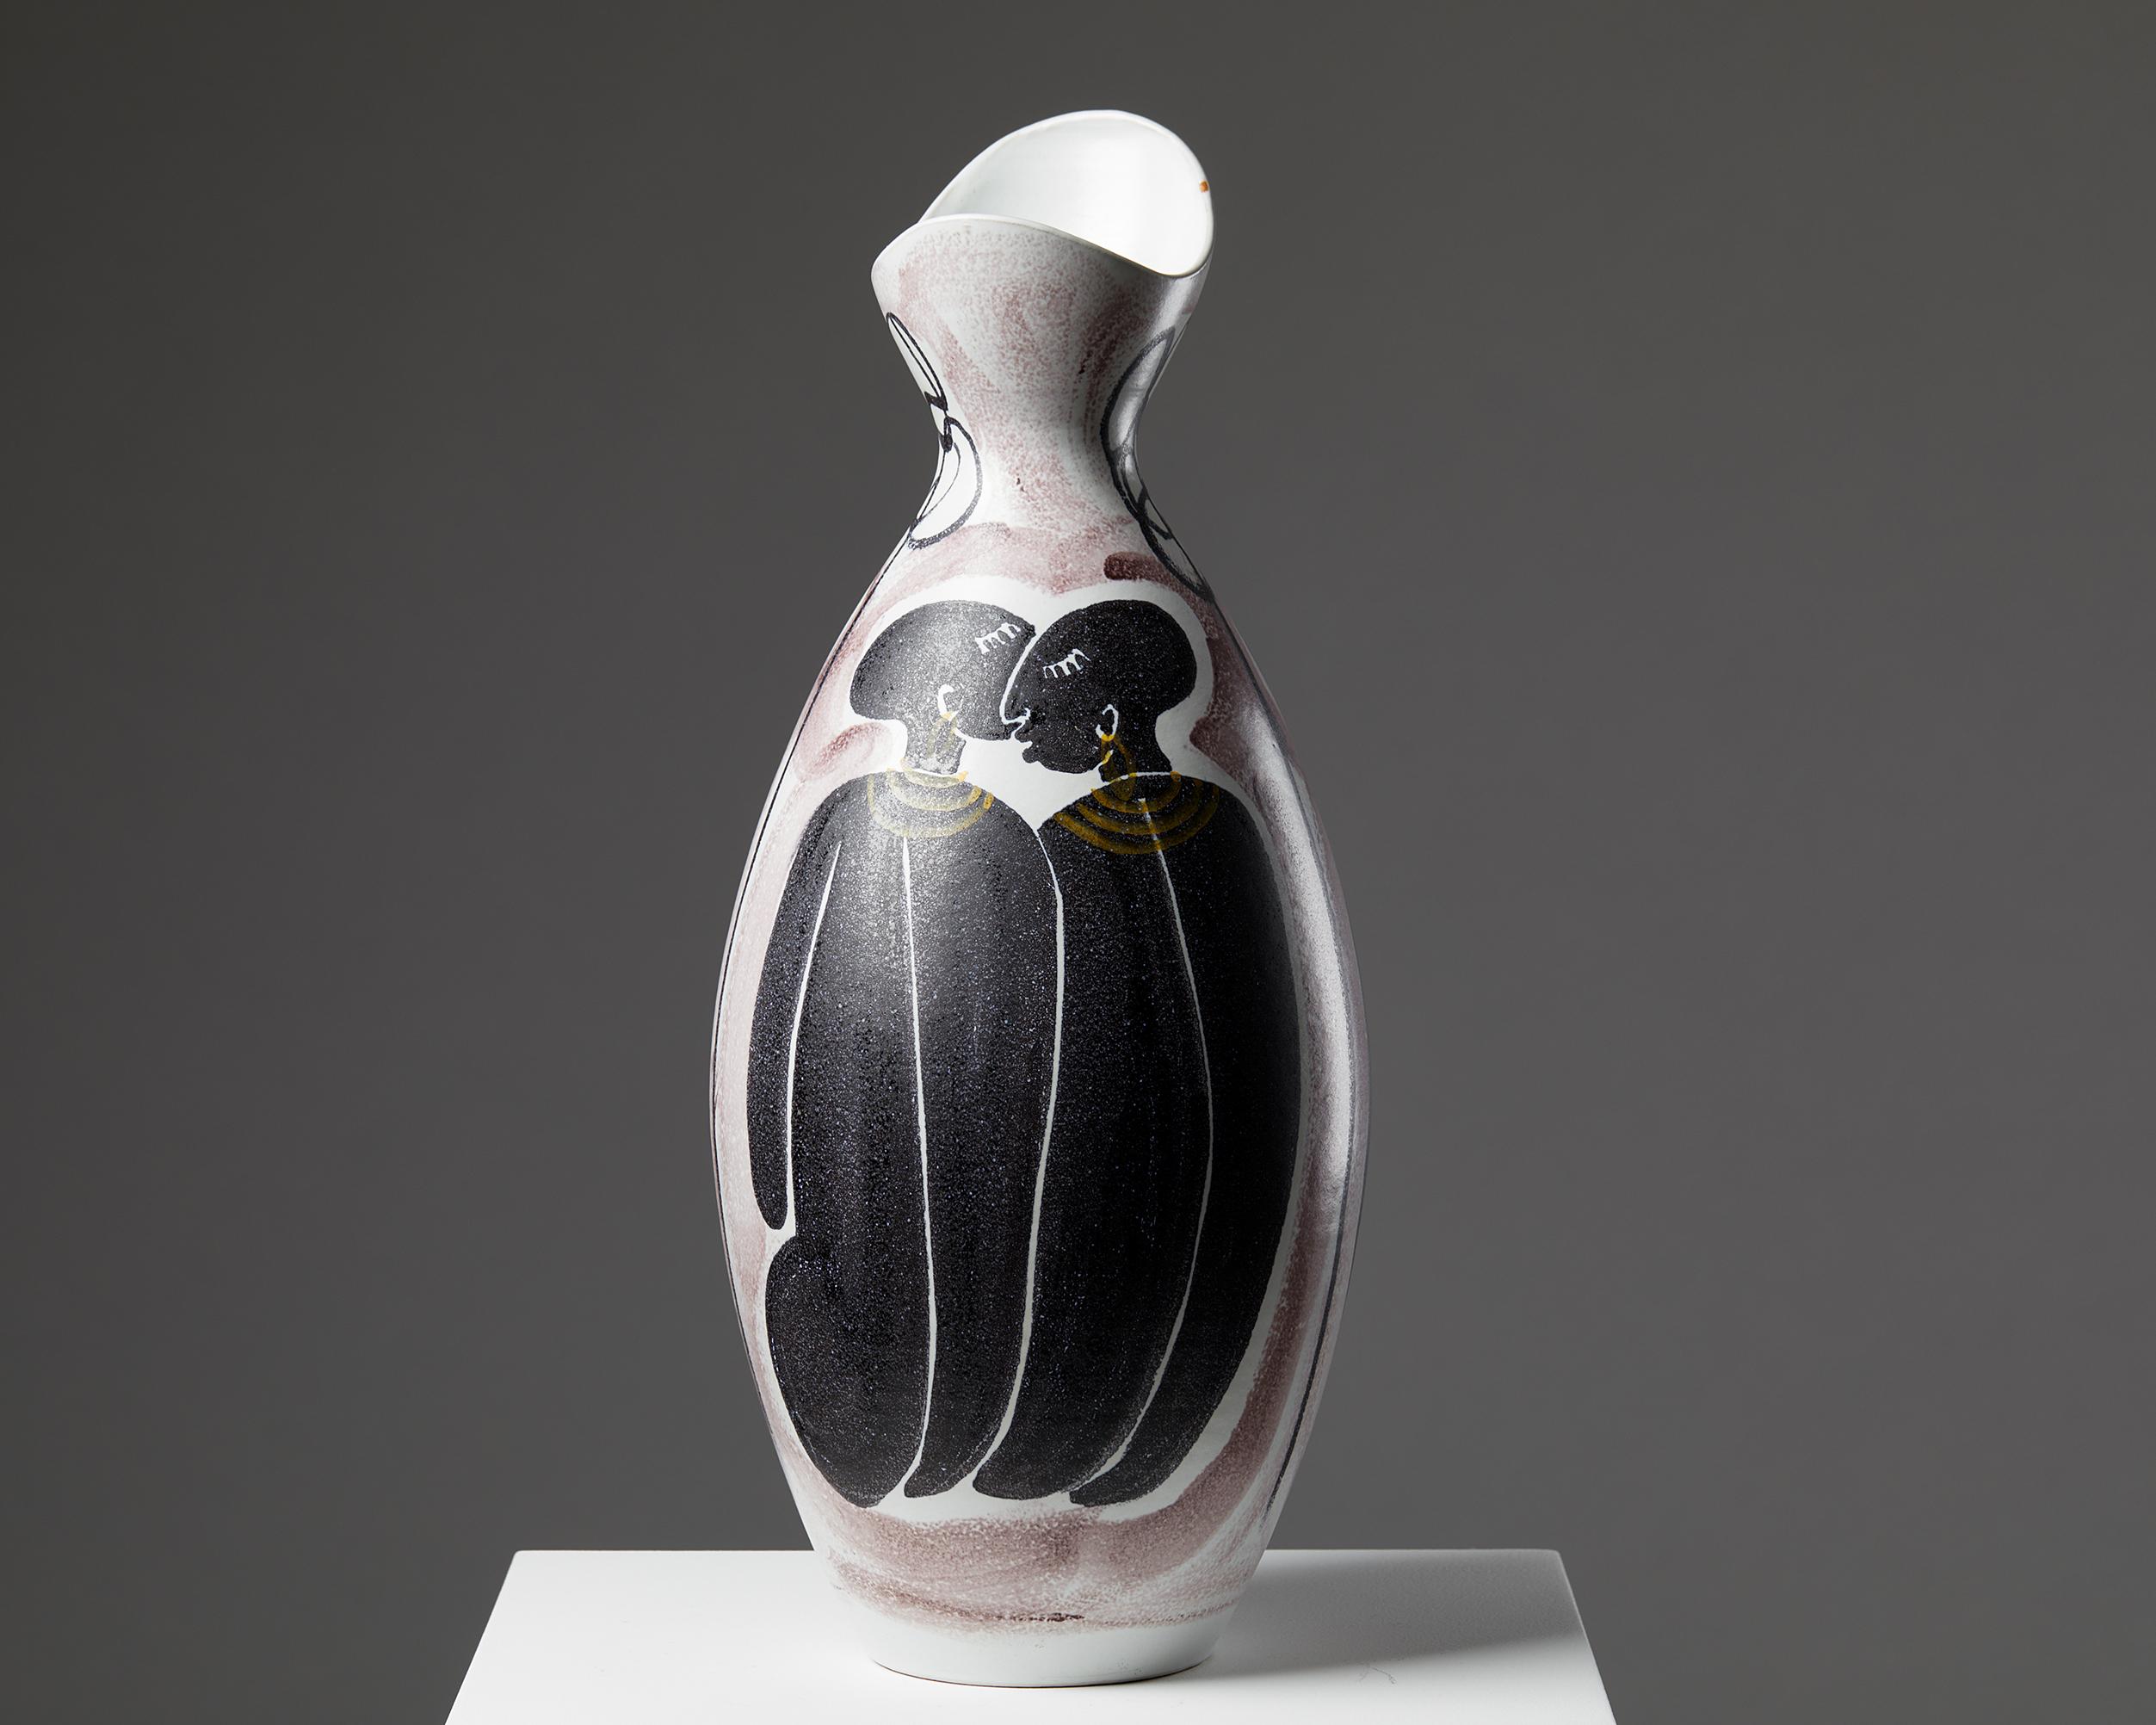 Die Vase wurde von Mette Doller für Alfred Johansson entworfen,
Schweden. 1950s.
Steingut.

Unterschrieben.

Maße: Höhe: 52 cm / 1' 8 1/2